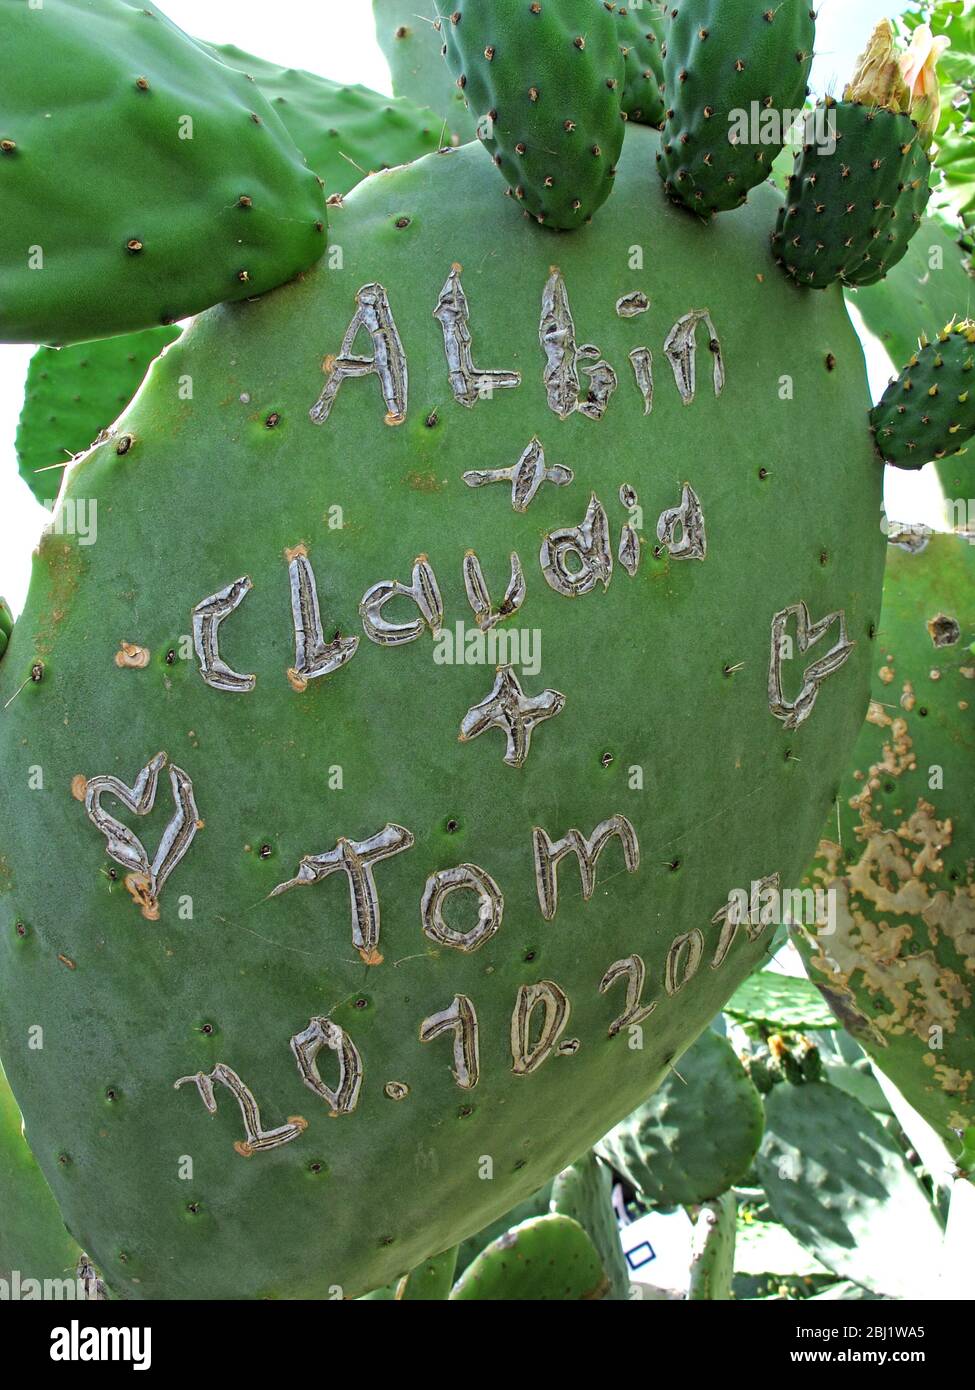 Albin,Claudia,Tom,scolpito,su cactus,graffiti Foto Stock